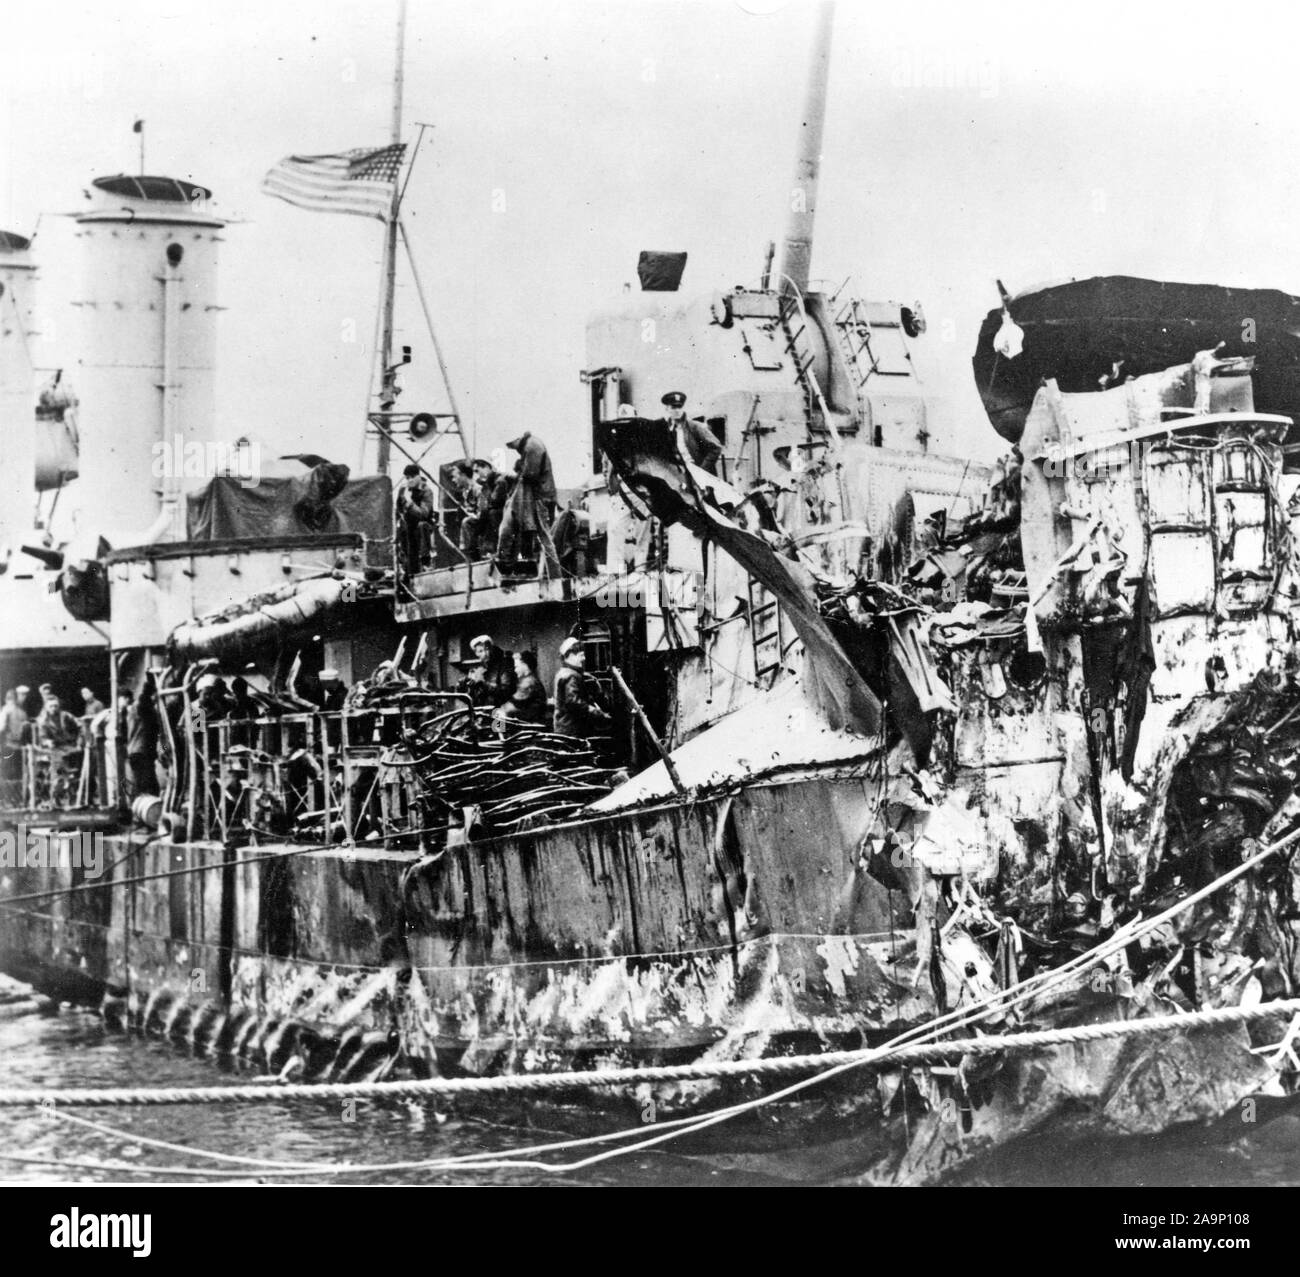 Les navires de la SECONDE GUERRE MONDIALE / World War II Navires - Cette photo montre la bataille d'endommager le DD-623 USS Nelson après avoir été torpillé dans la poupe. Le navire a été réparé par Boston Navy Yard et retourné à flotte en novembre 1944. (Ca. Juin 1944) Banque D'Images